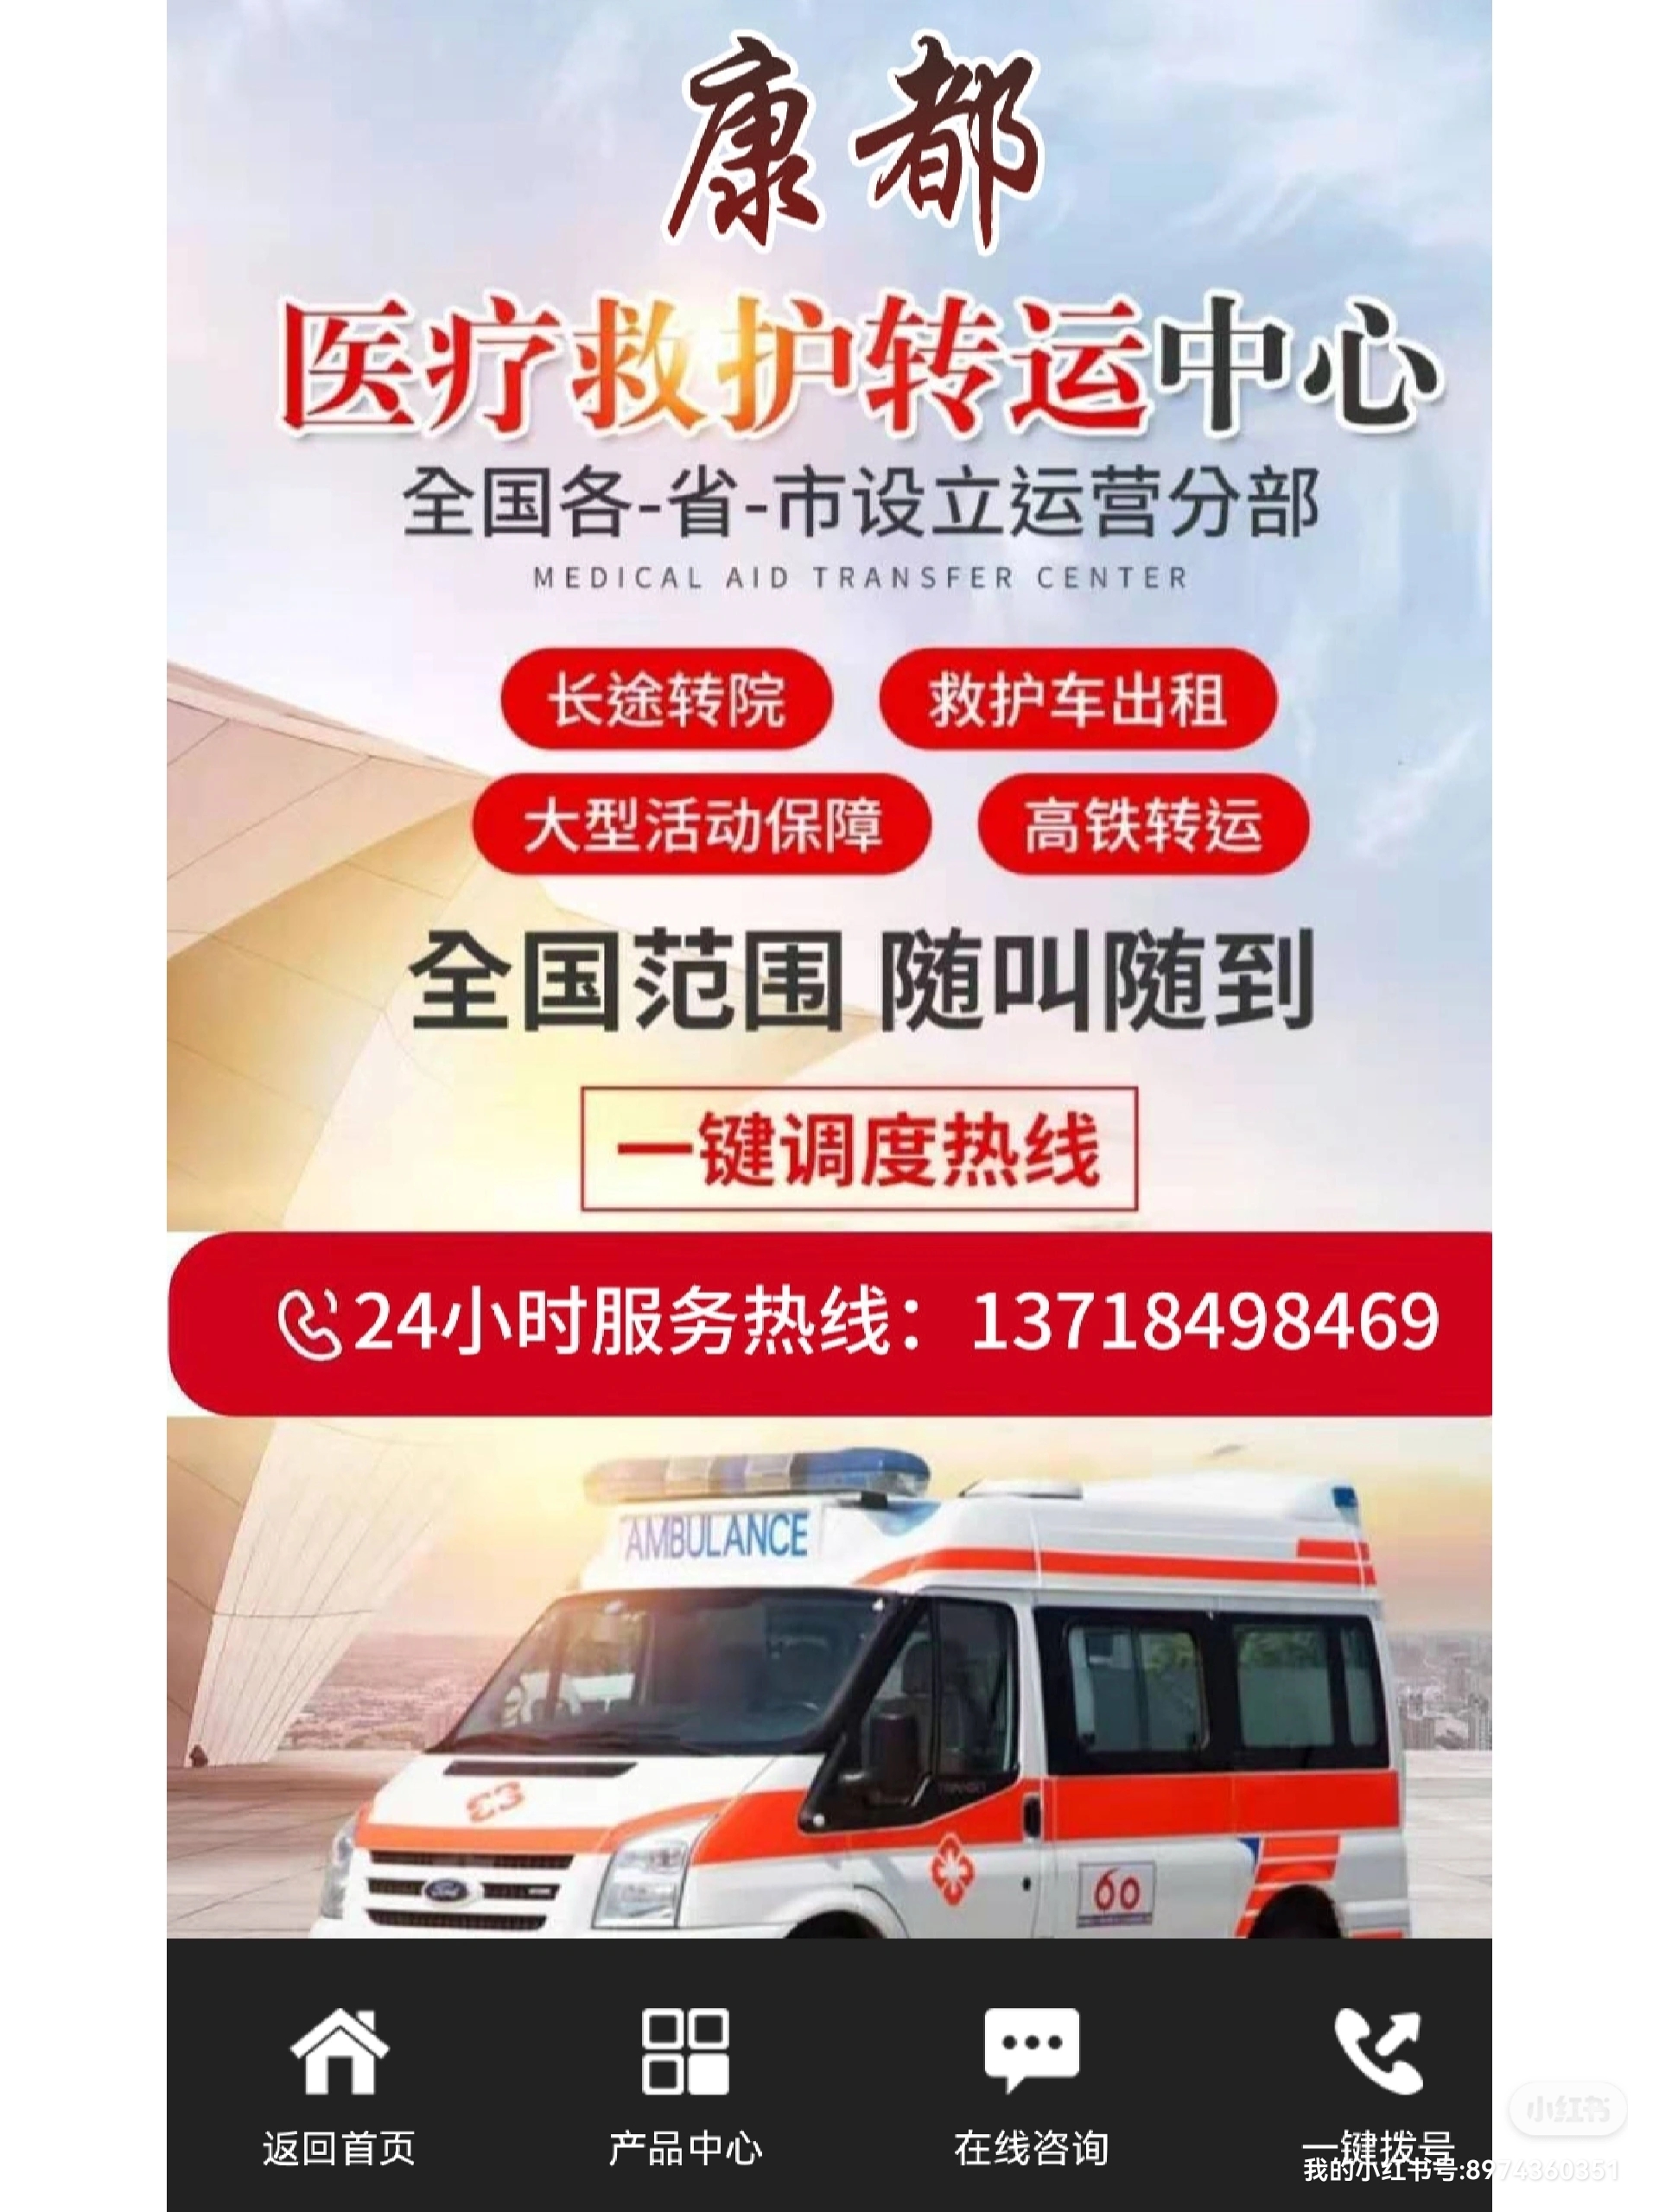 北京120长途运送病人费用